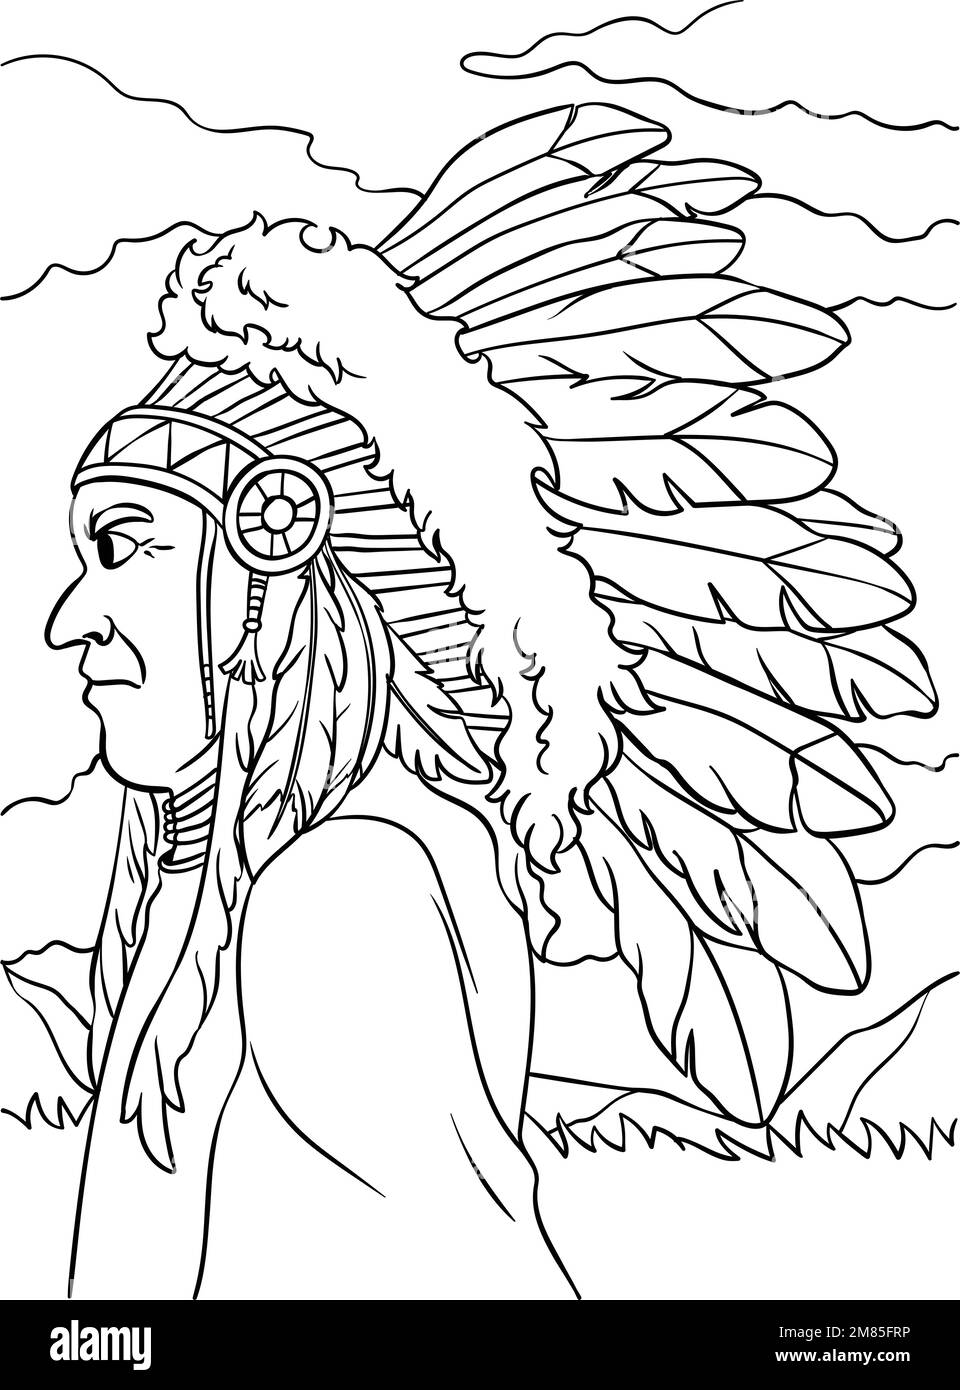 Cacique indio nativo americano fotografías e imágenes de alta resolución -  Alamy